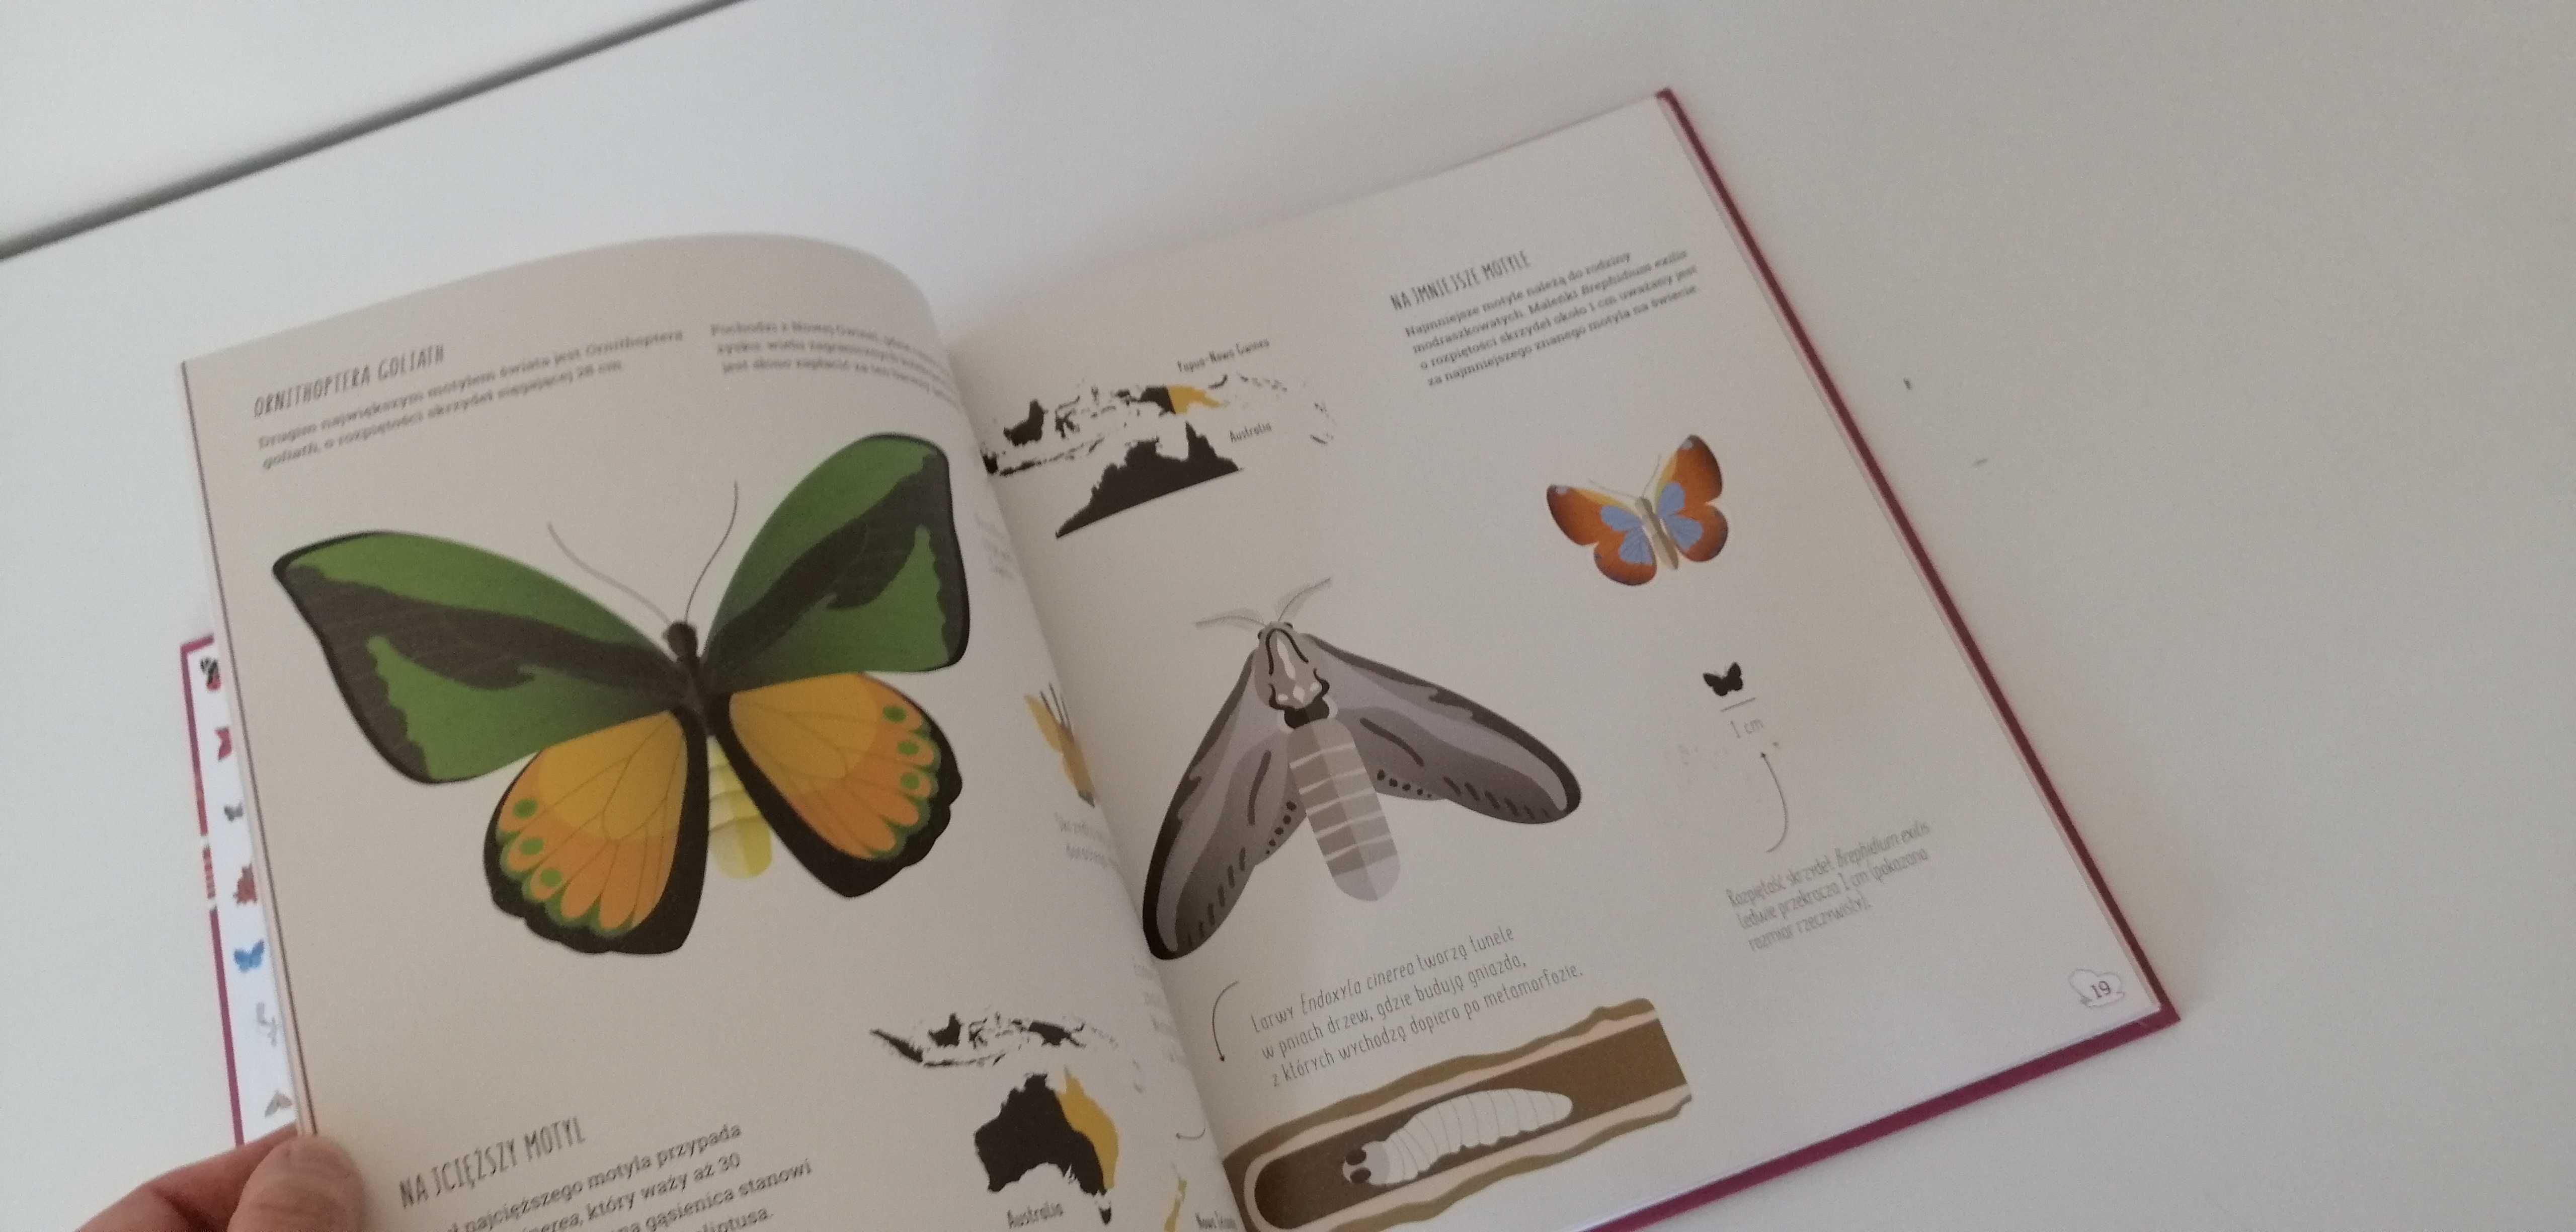 książka przyrodnicza dla dzieci świat motyli o motylach atlas motylki